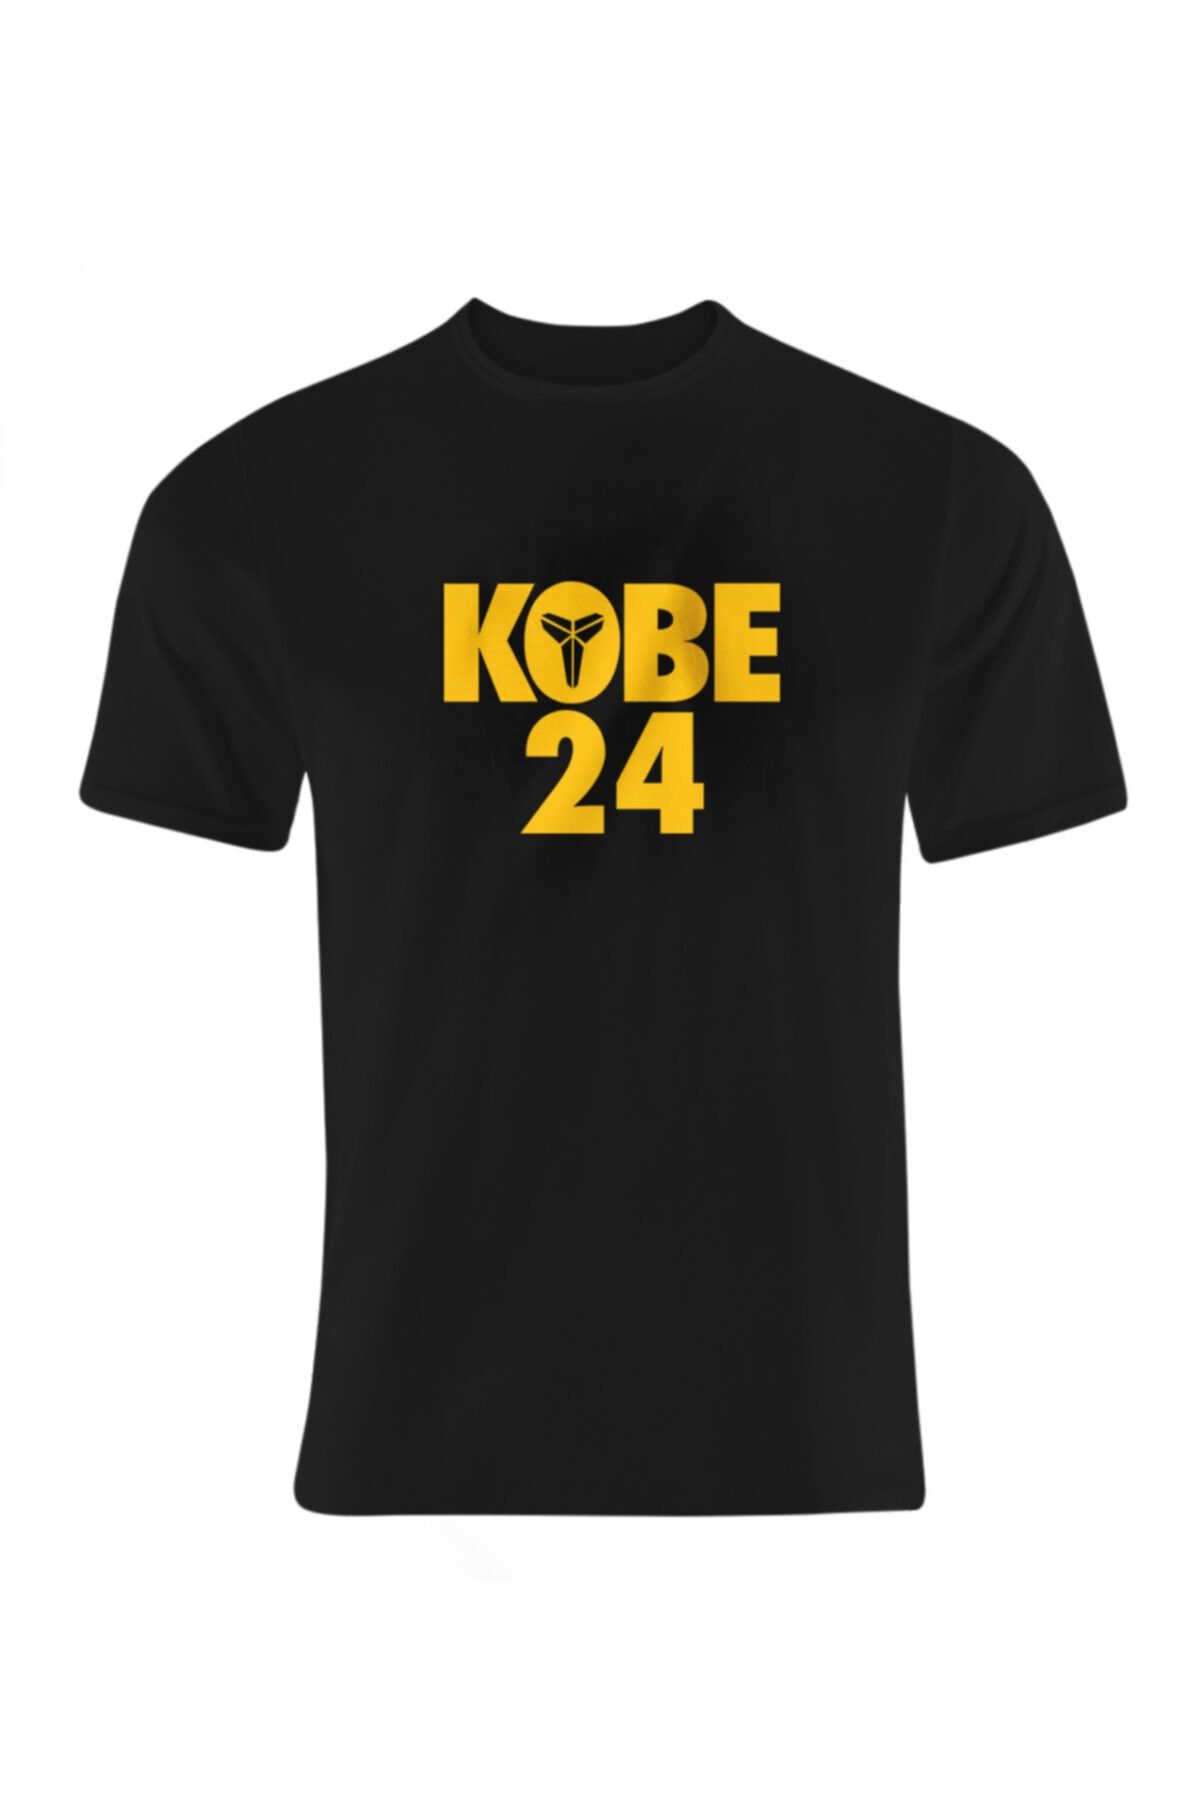 Usateamfans Kobe 24 Tshirt